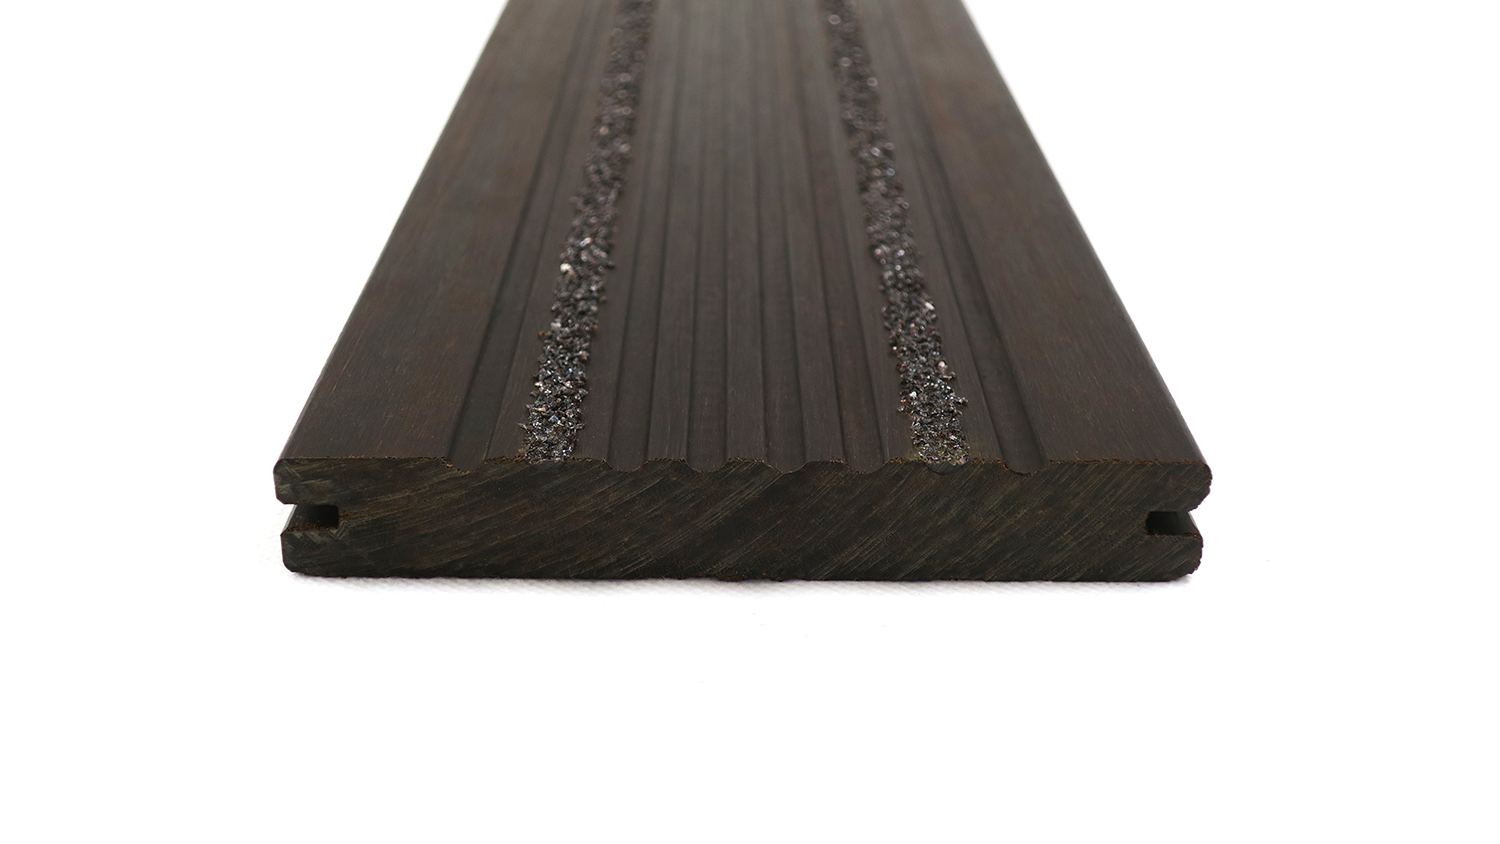 Gripsure Bamboo Non-Slip Deck Board